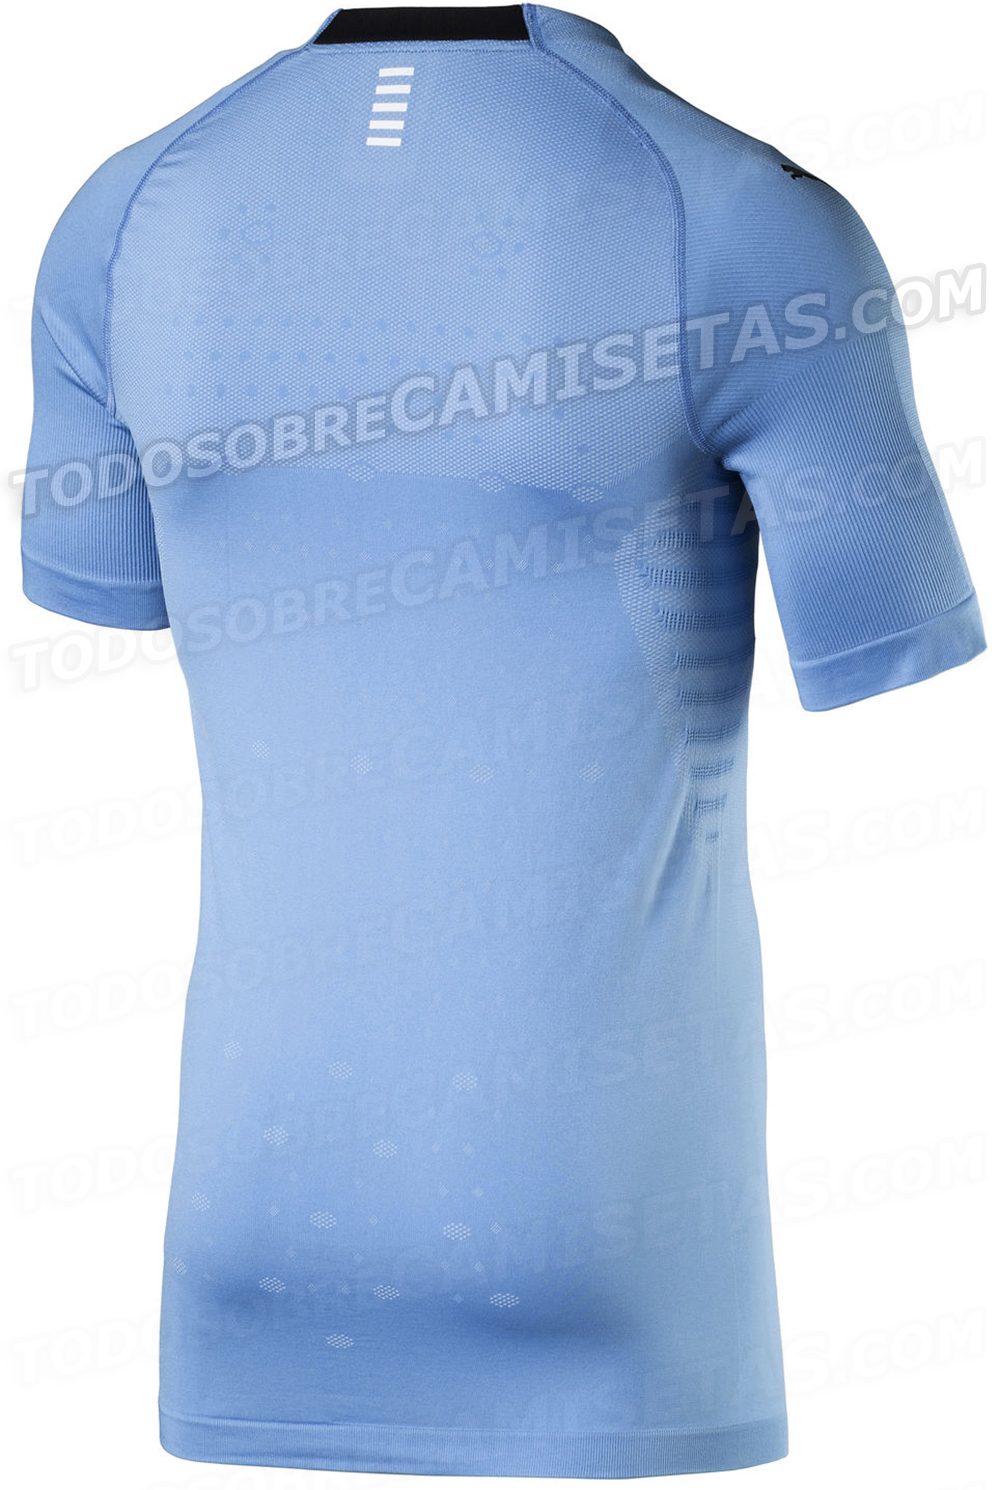 Camiseta de Uruguay 2018